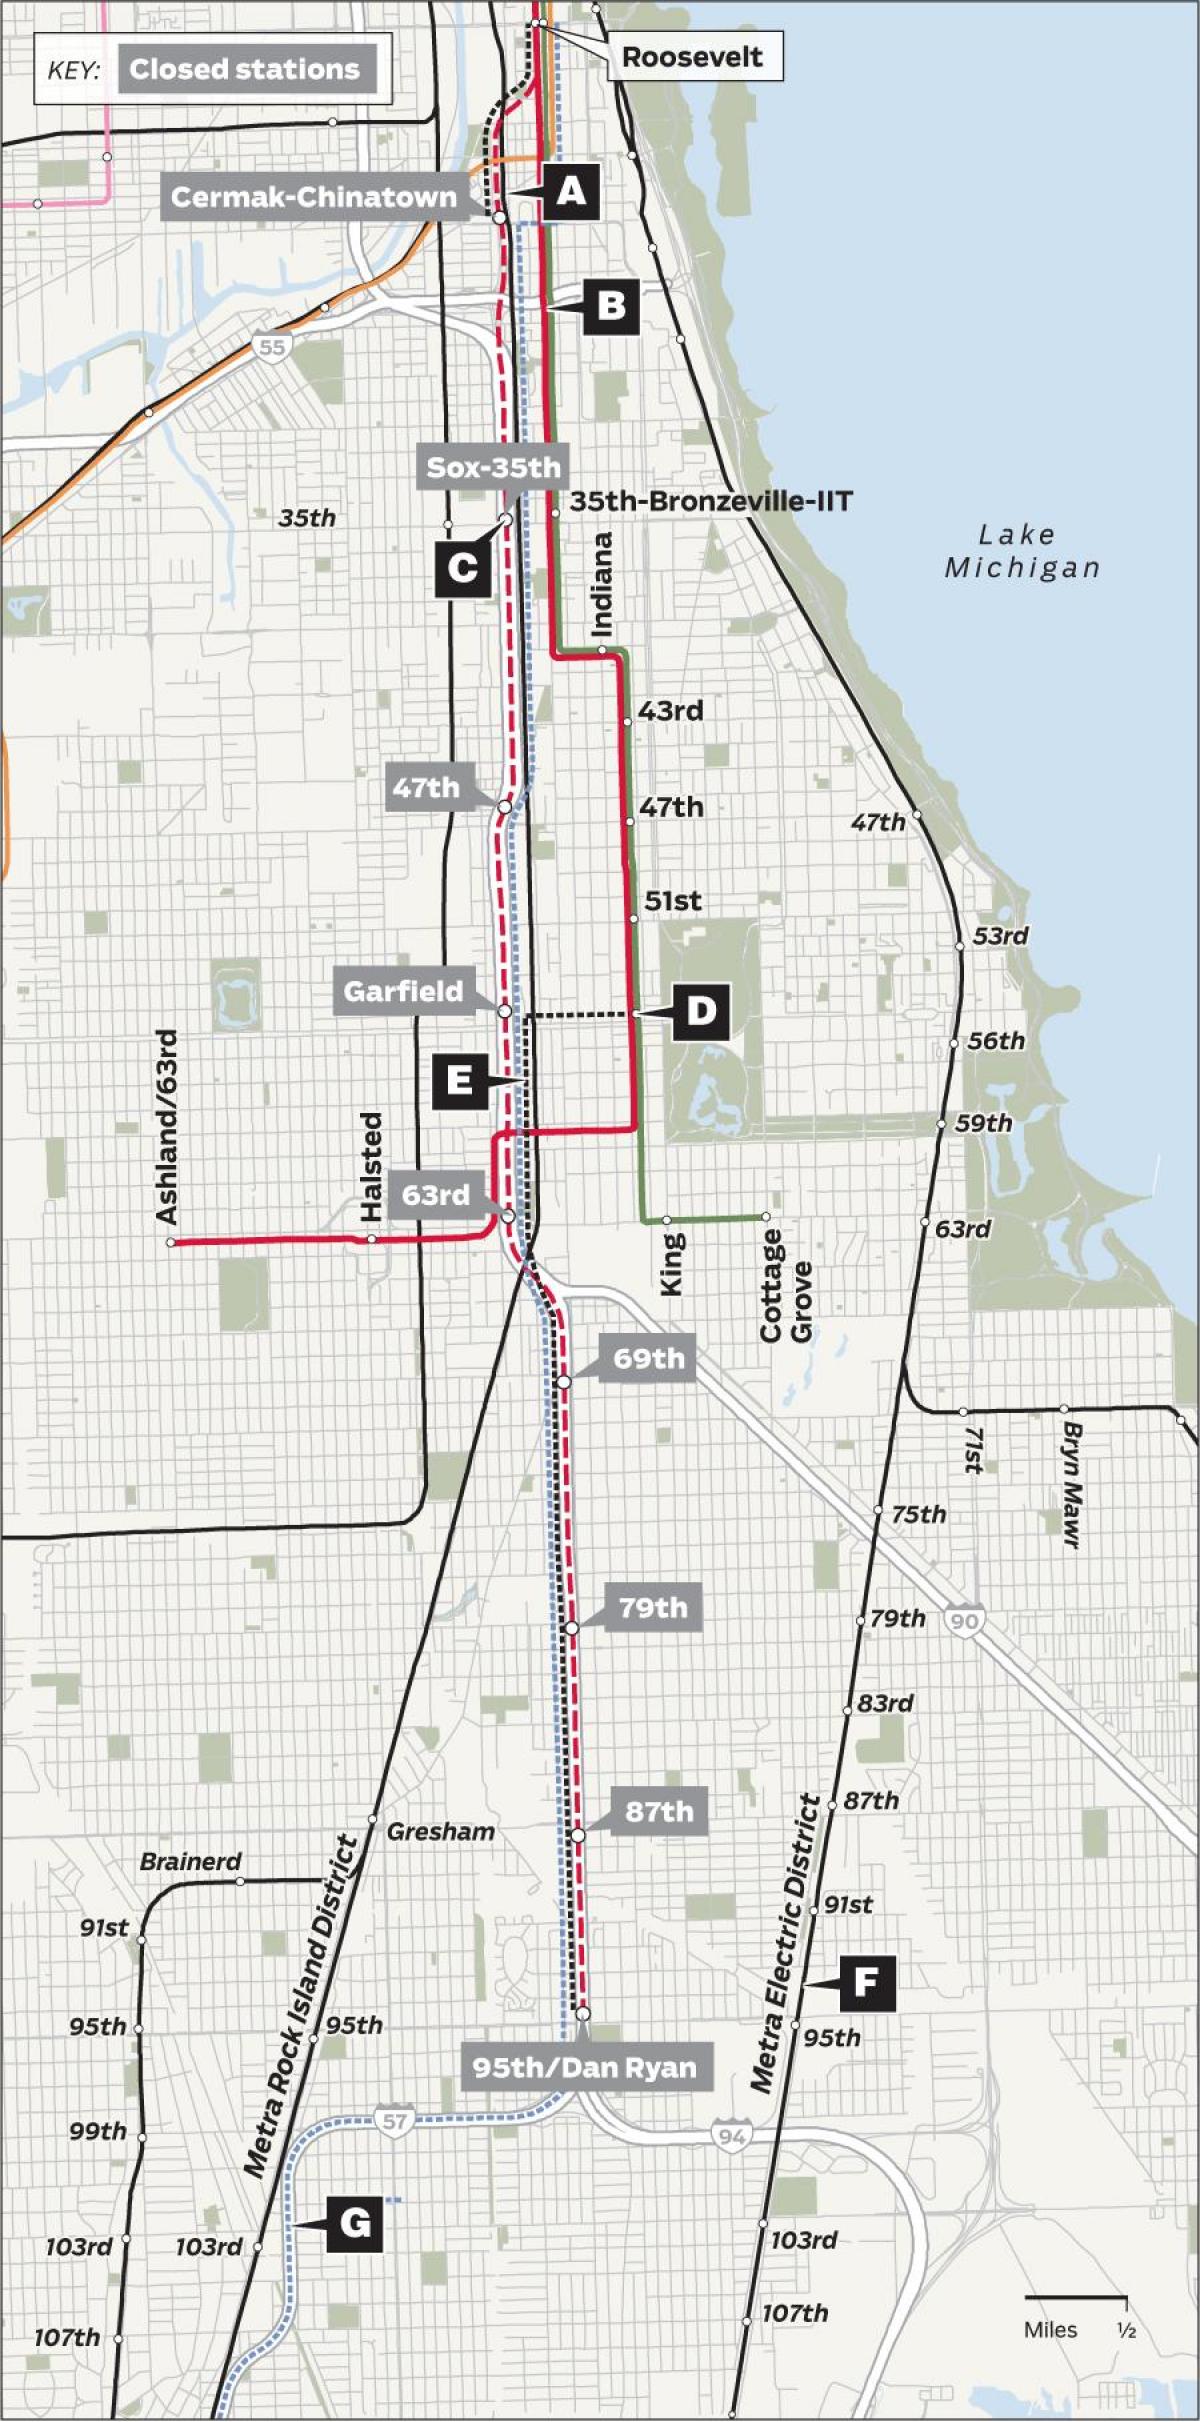 redline Chicago hartë